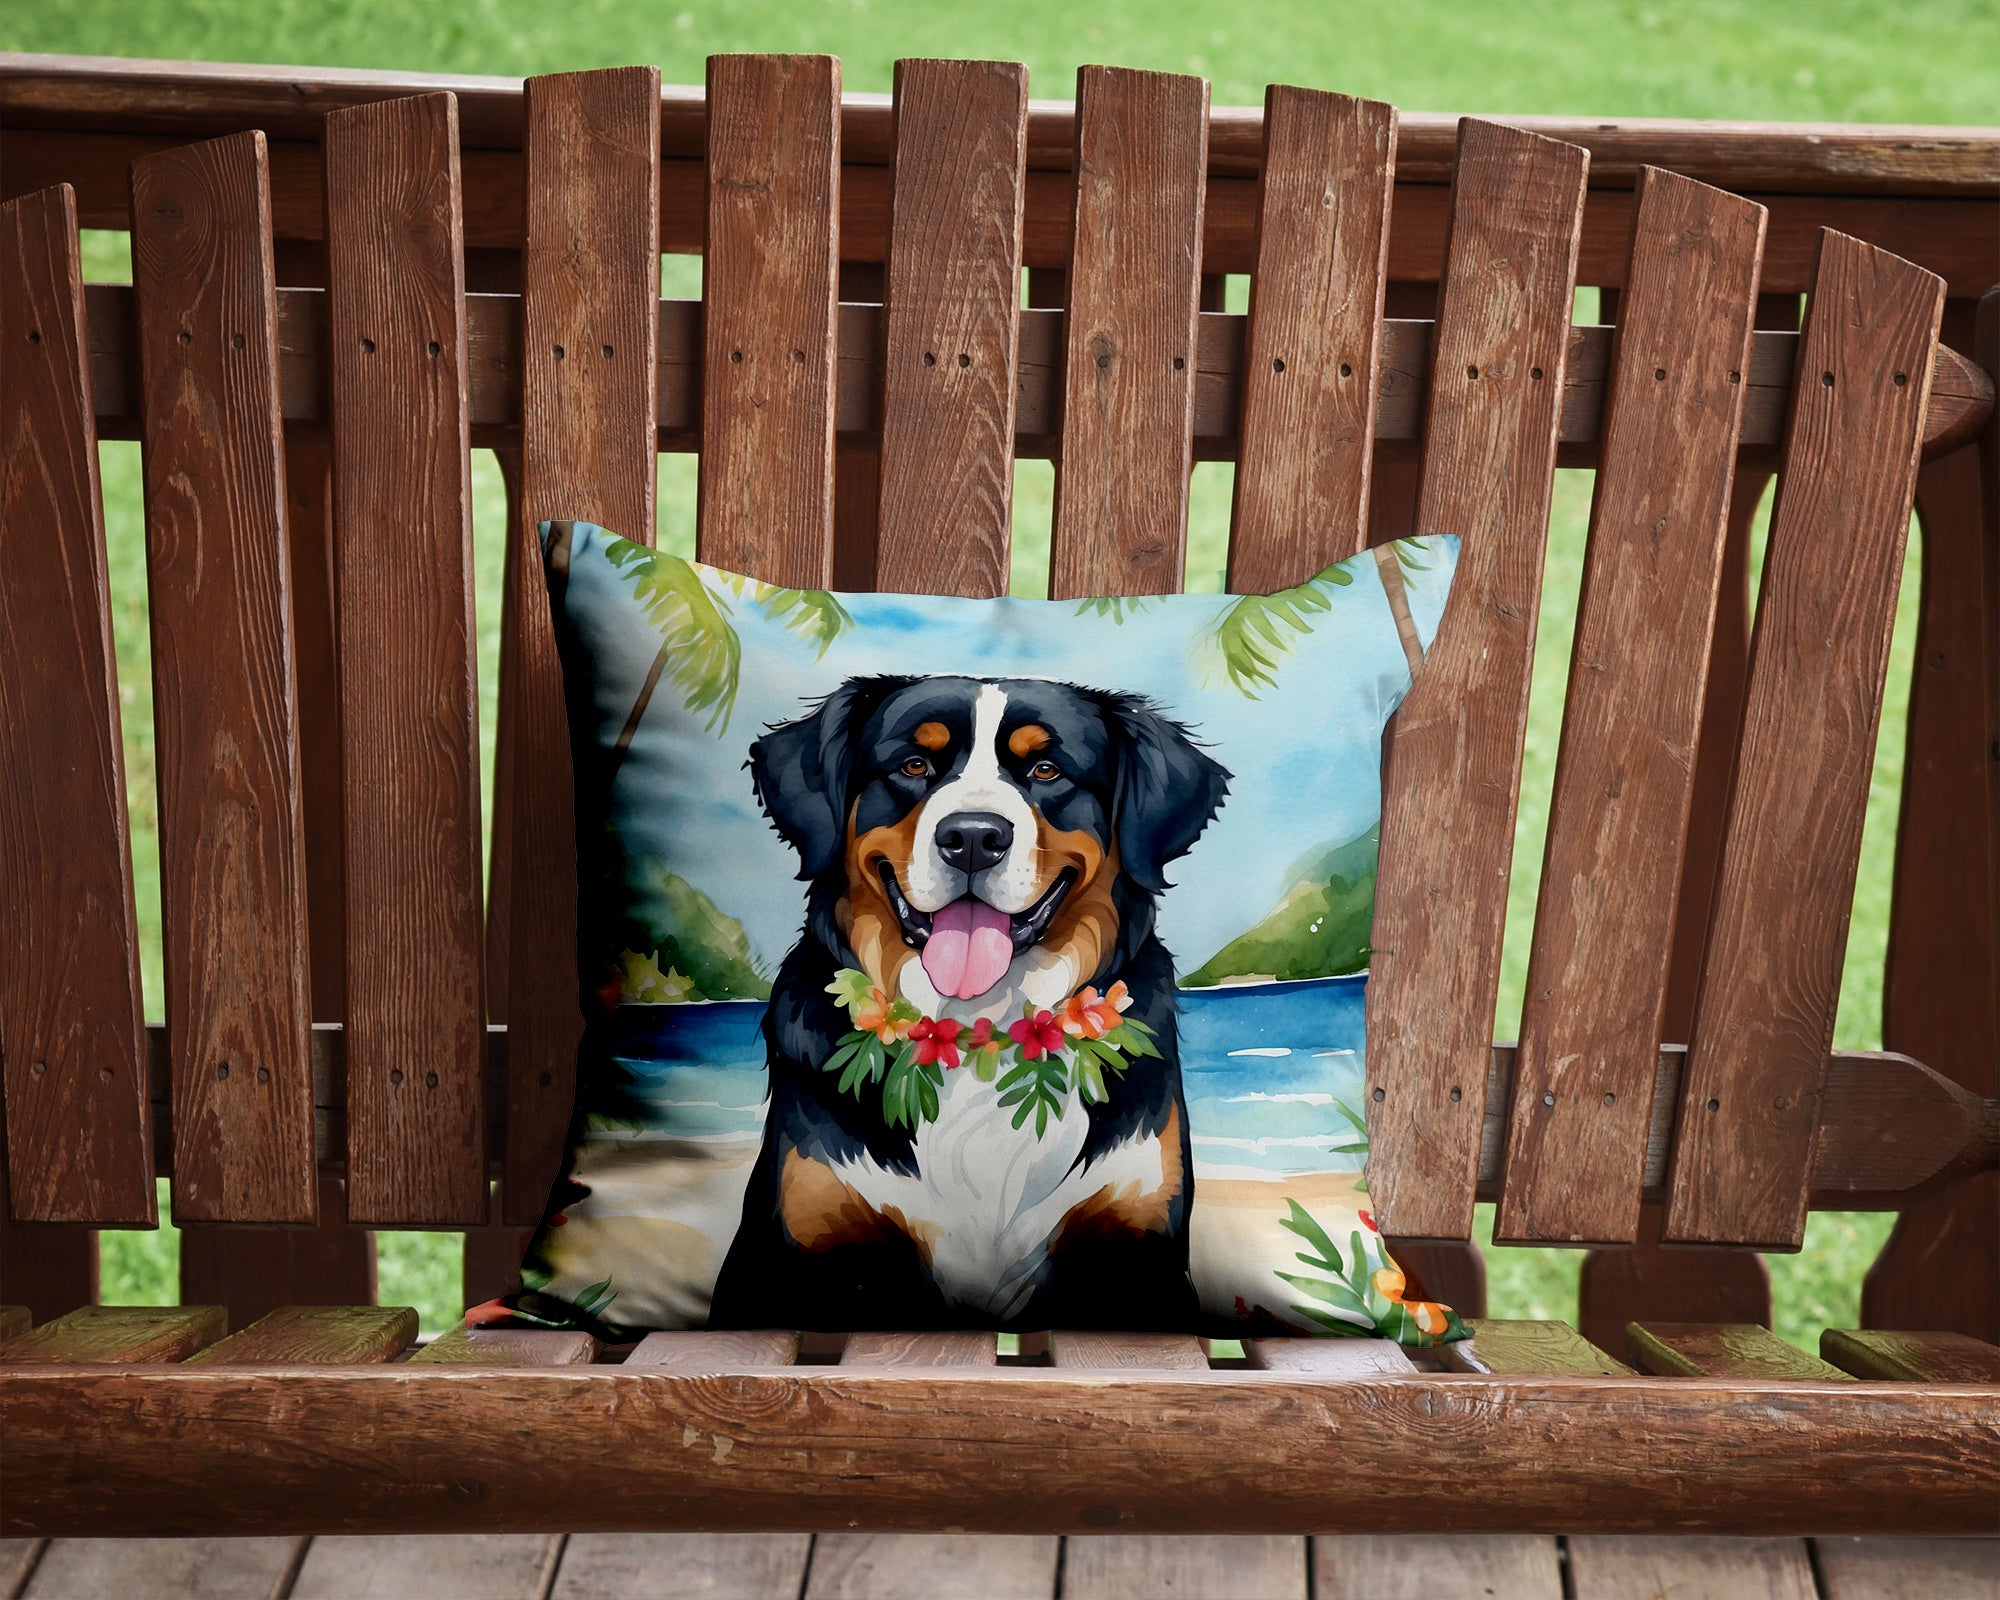 Buy this Bernese Mountain Dog Luau Throw Pillow